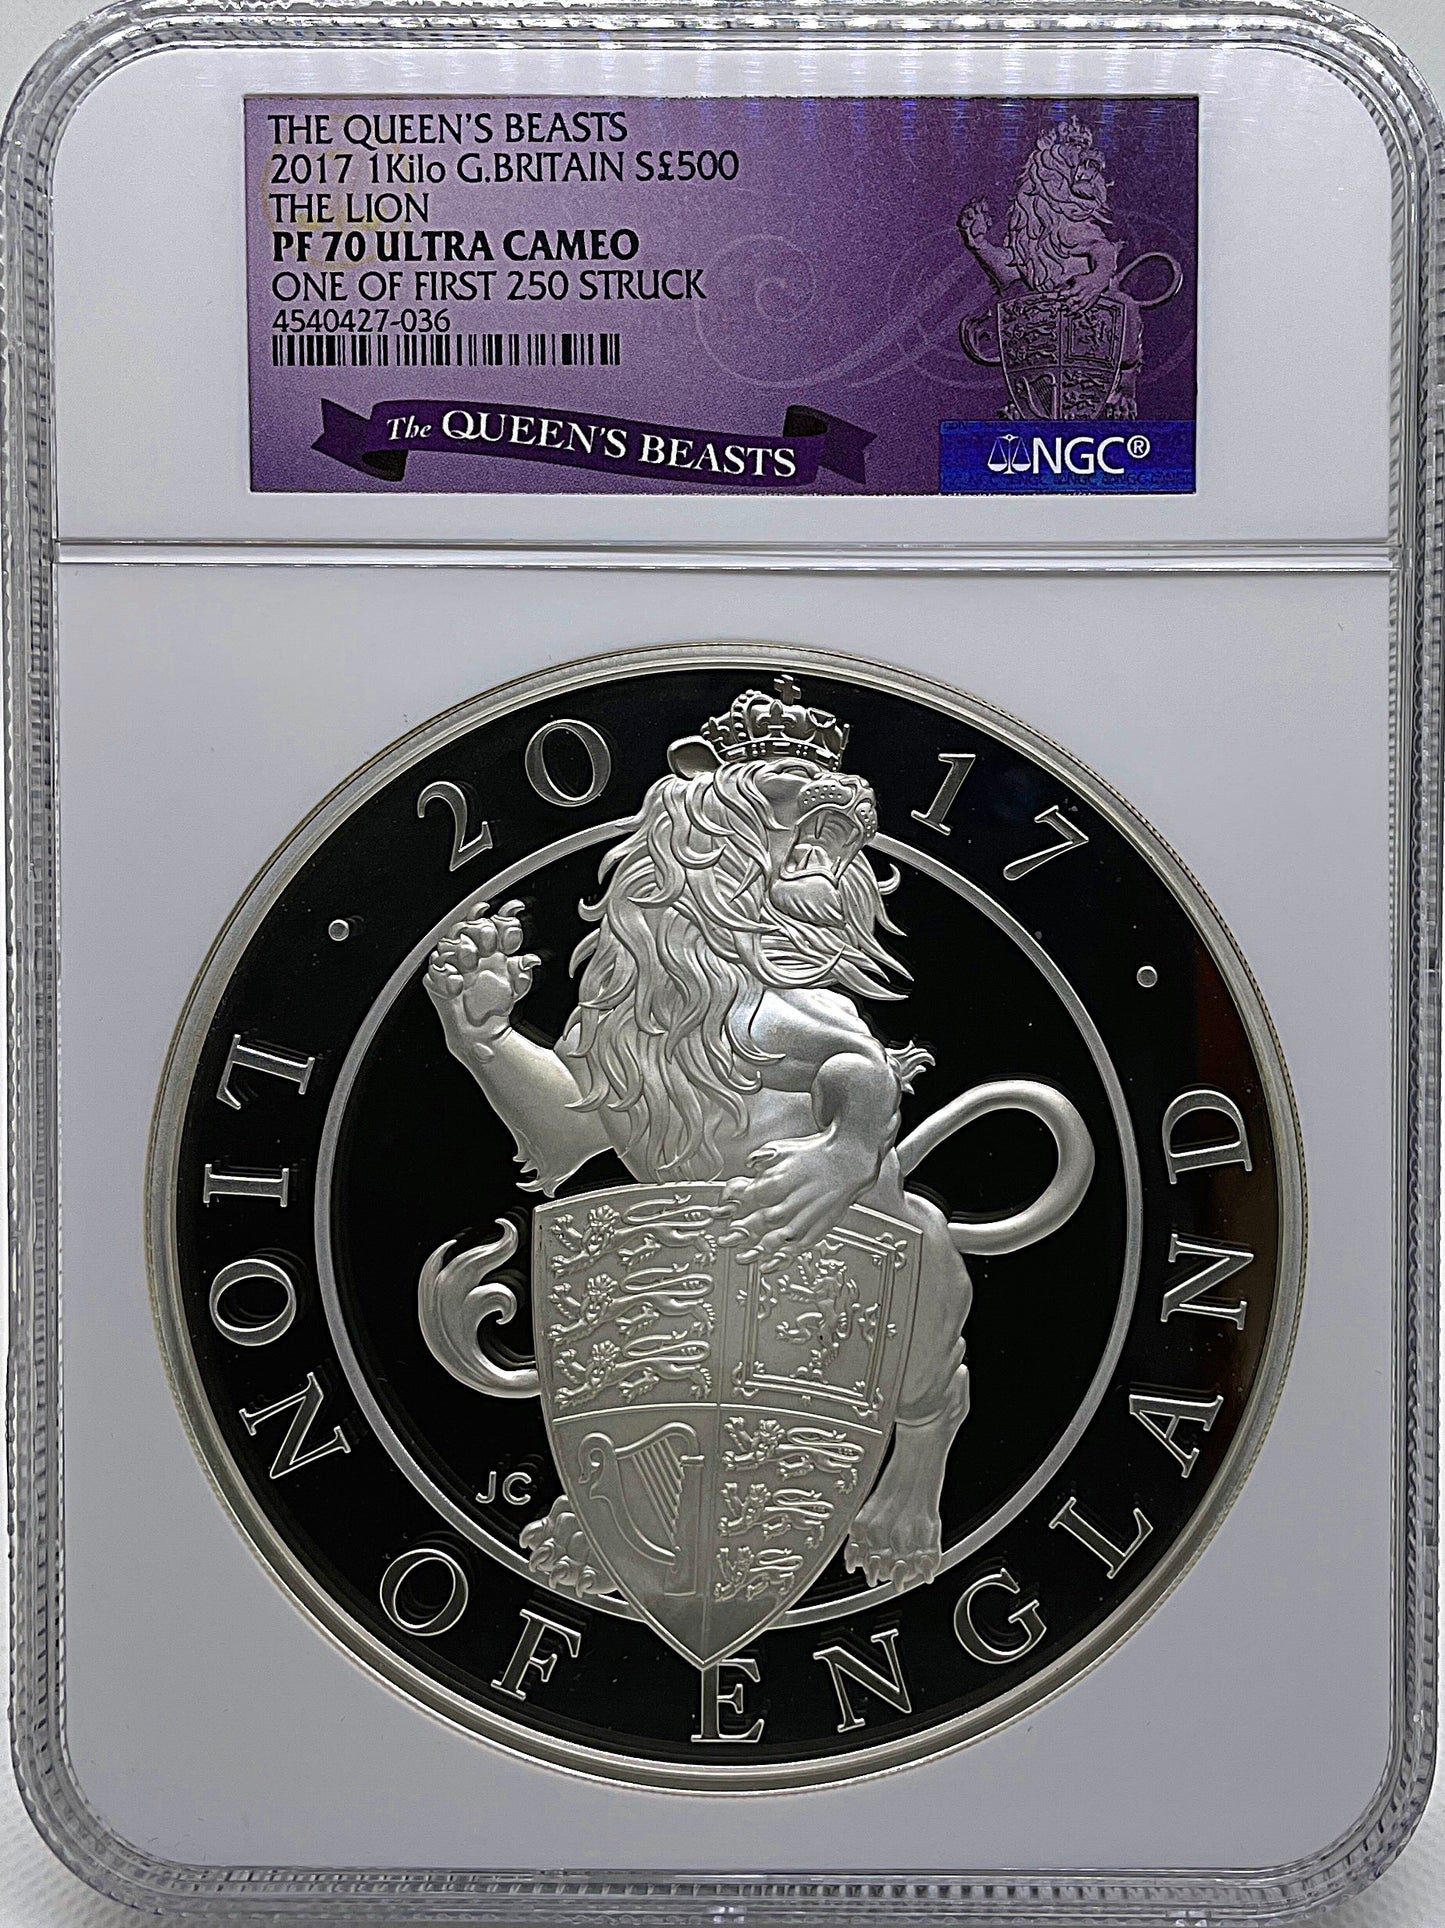 2017年 イギリス クイーンズ ビースト イングランドのライオン 1キロ 500ポンド 銀貨 NGC PF70UC-1